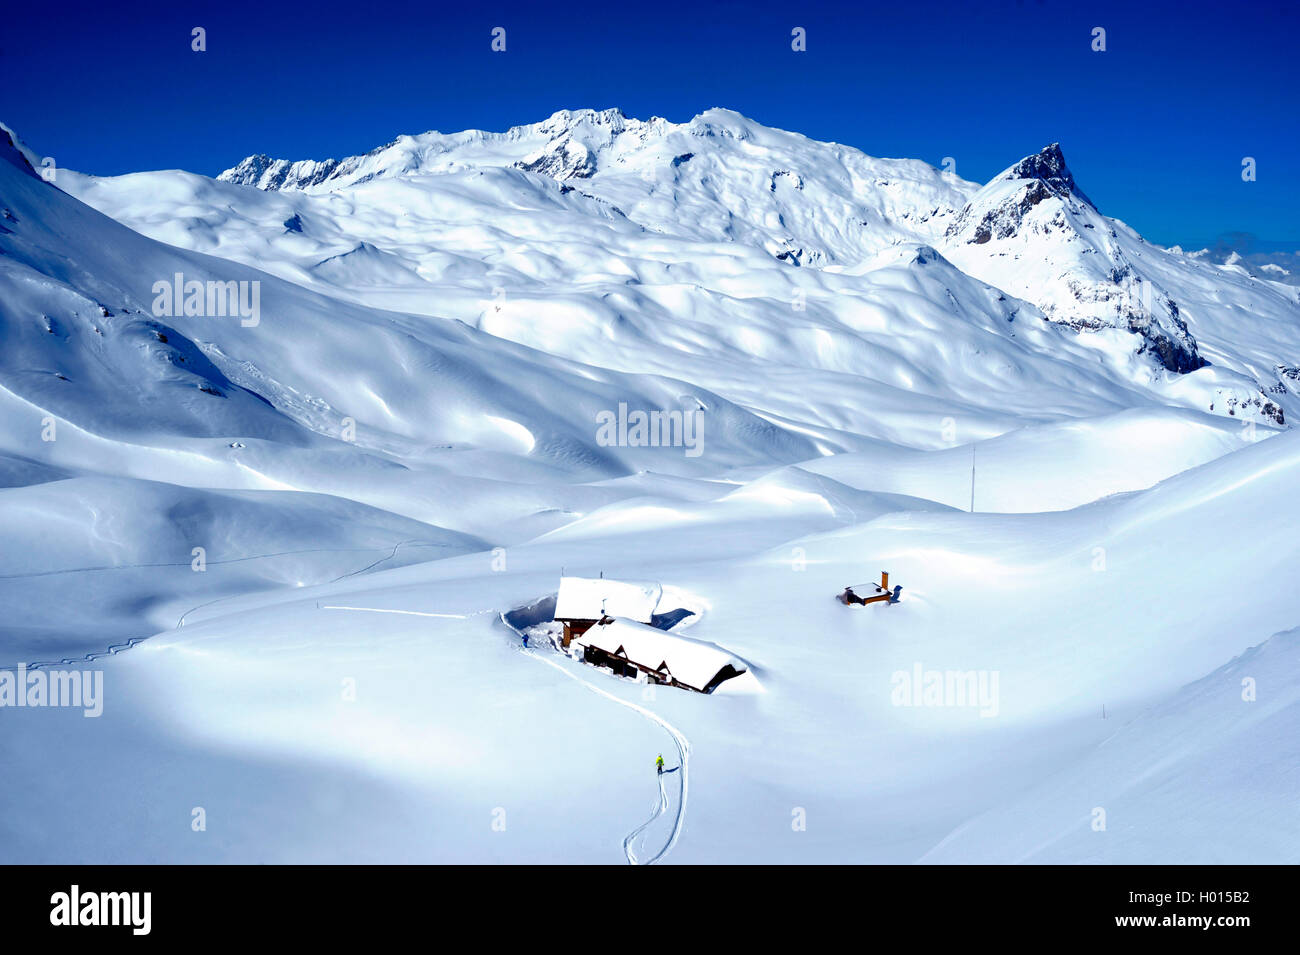 Skiwanderer auf dem Weg zur Berghuette am Bergpass Palet, Frankreich, Savoie, Vanoise Nationalpark | Sci wanderer vicino al refug Foto Stock